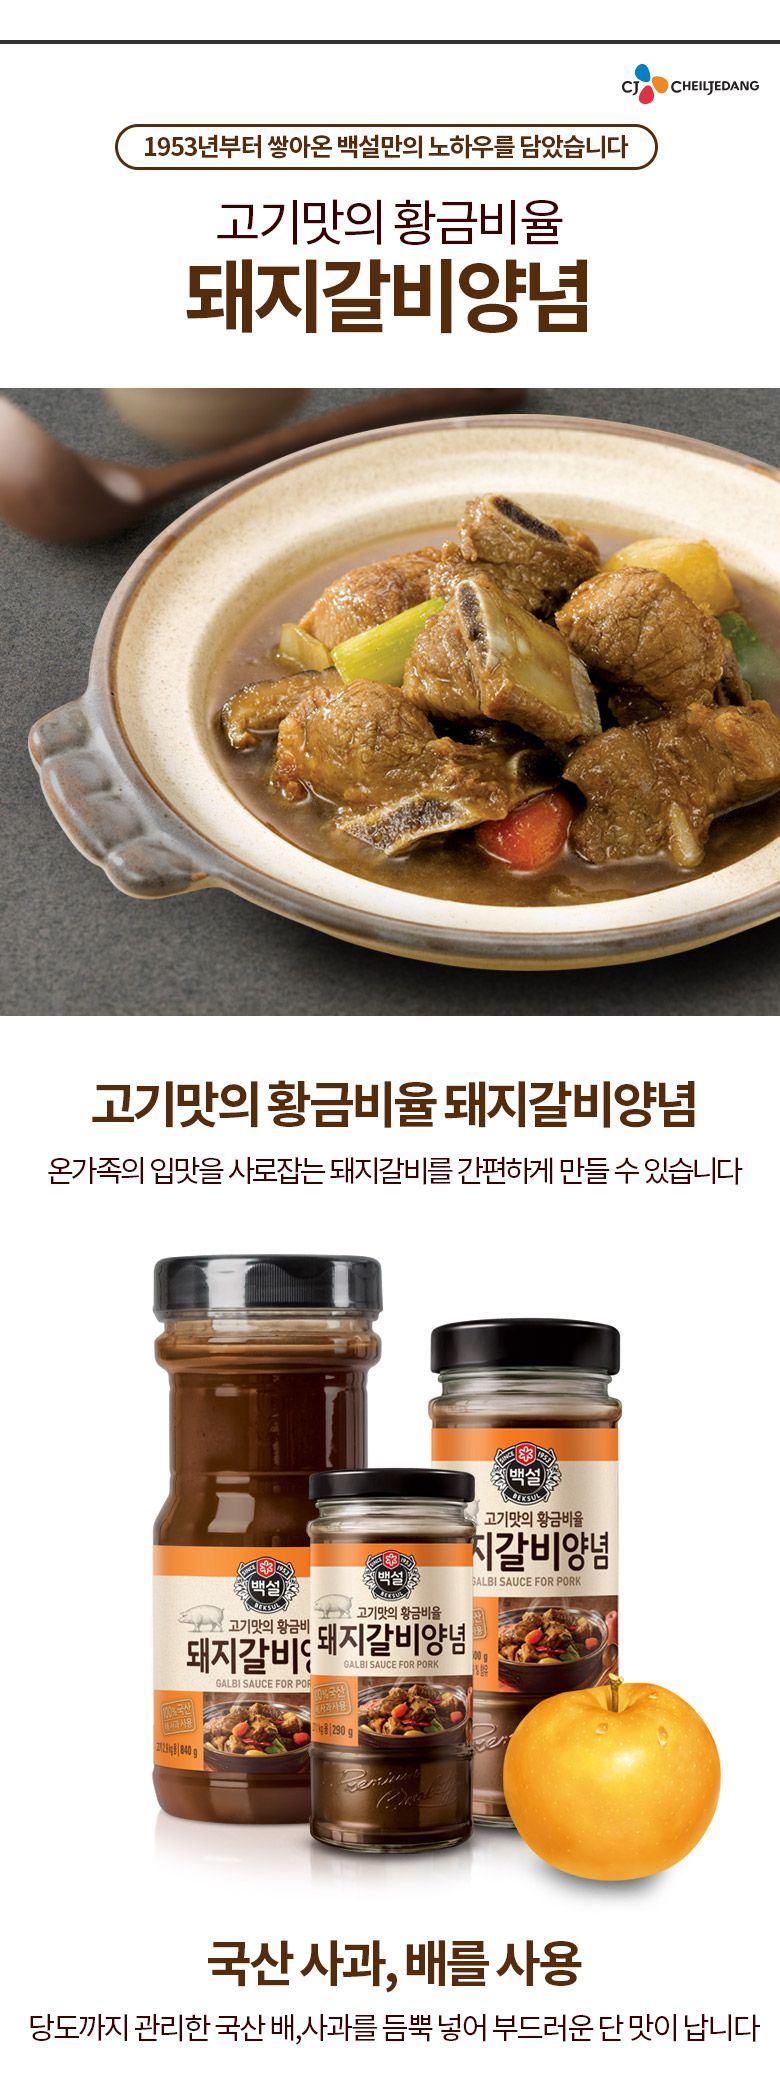 韓國食品-[CJ] 백설 돼지갈비양념 500g